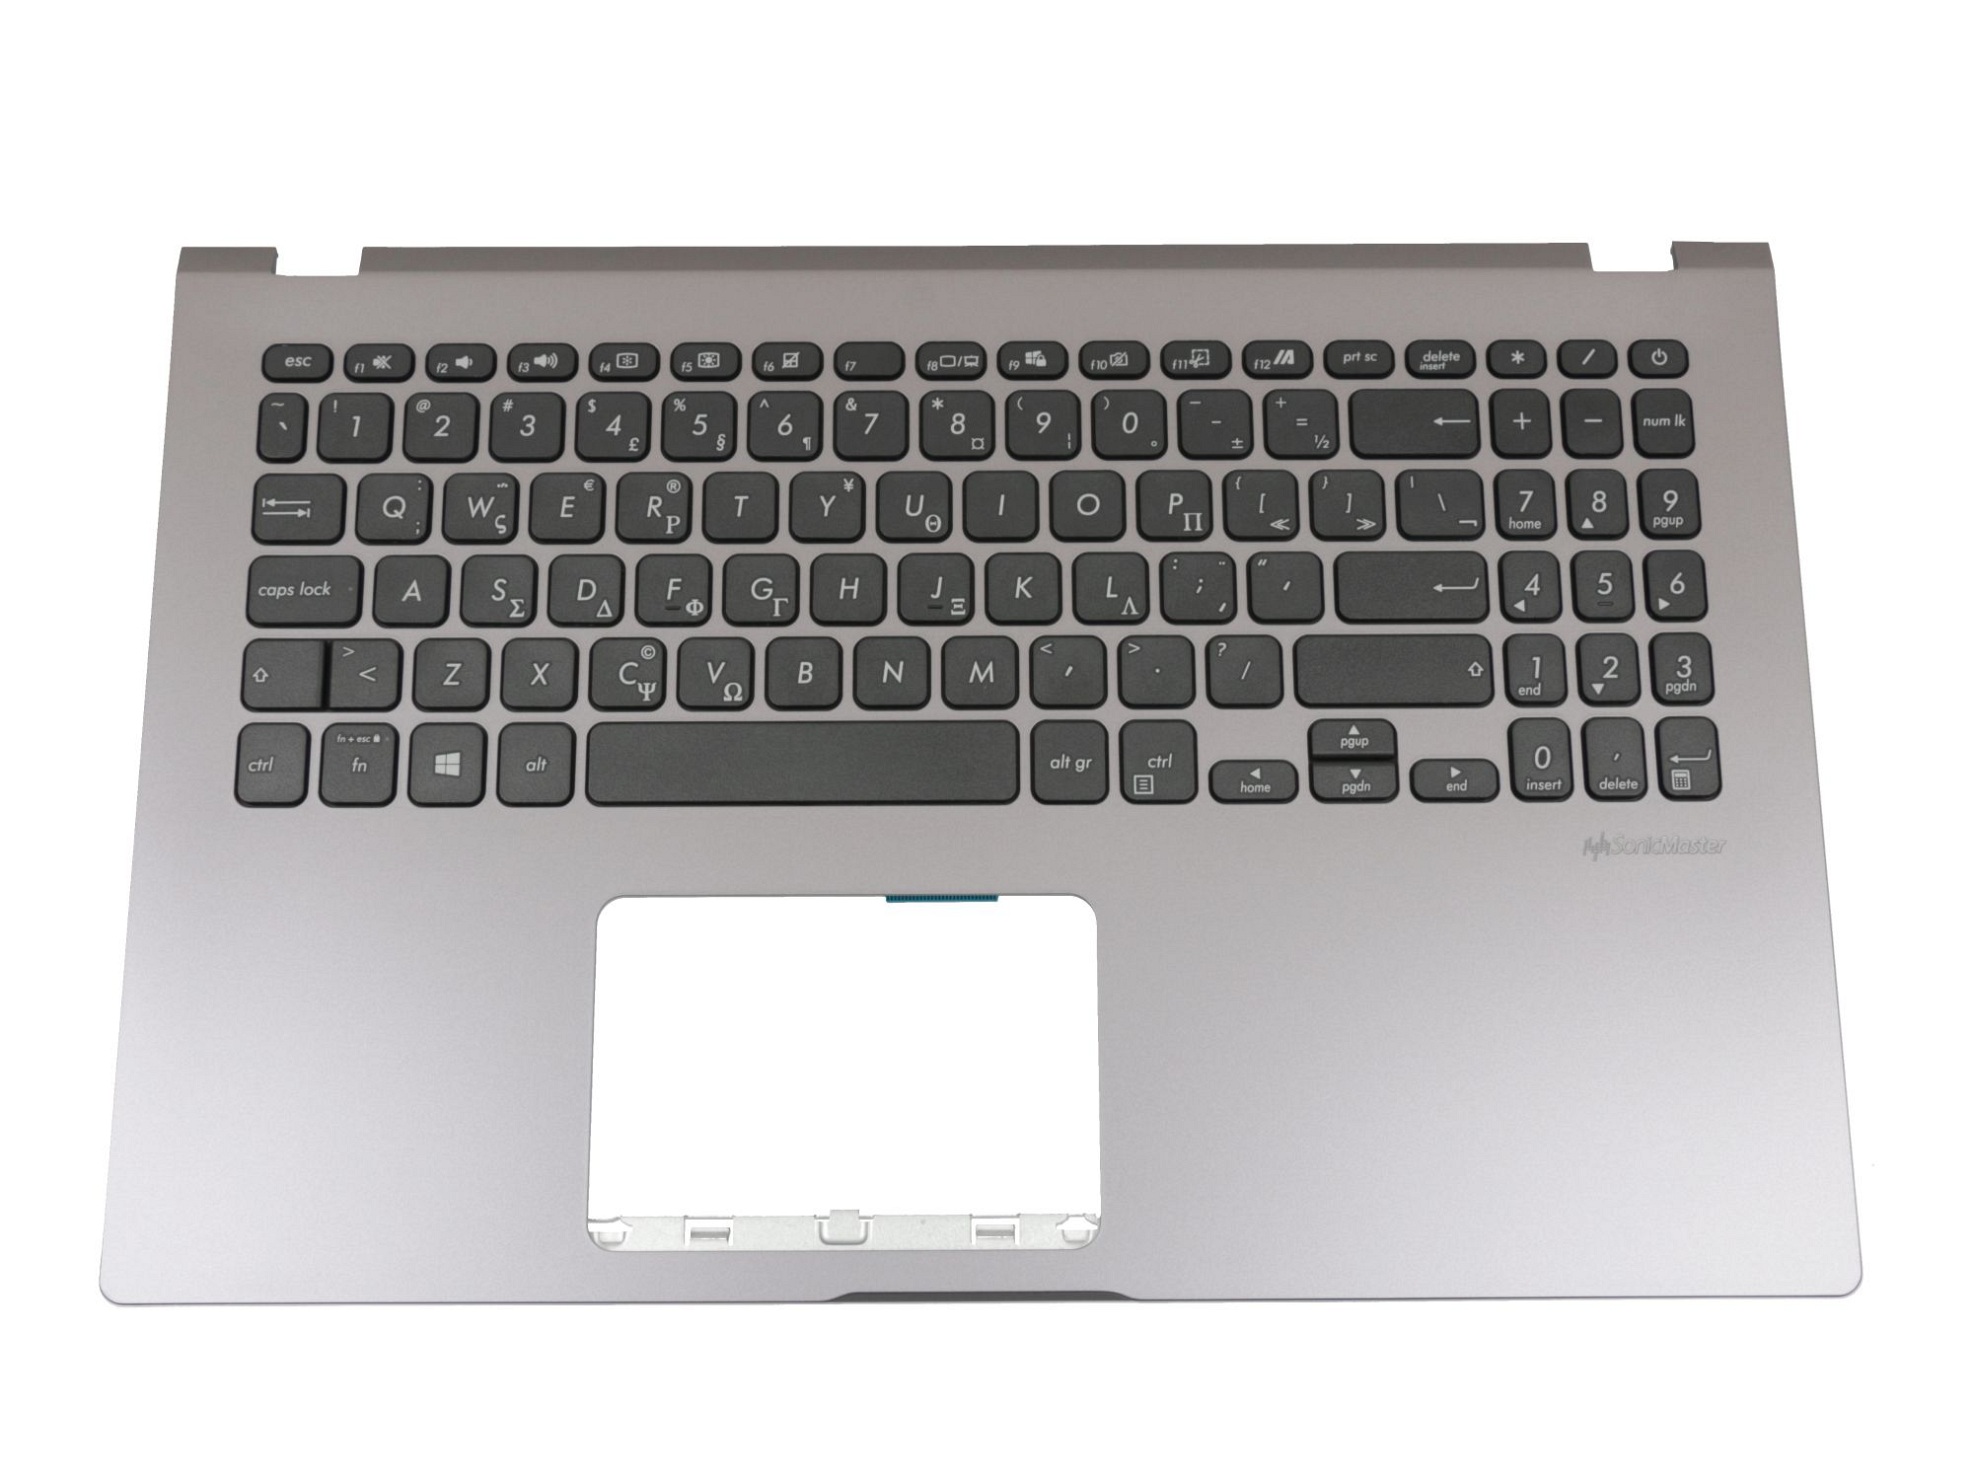 Asus 0KNB0-5117GR00 Tastatur inkl. Topcase GR (griechisch) schwarz/grau